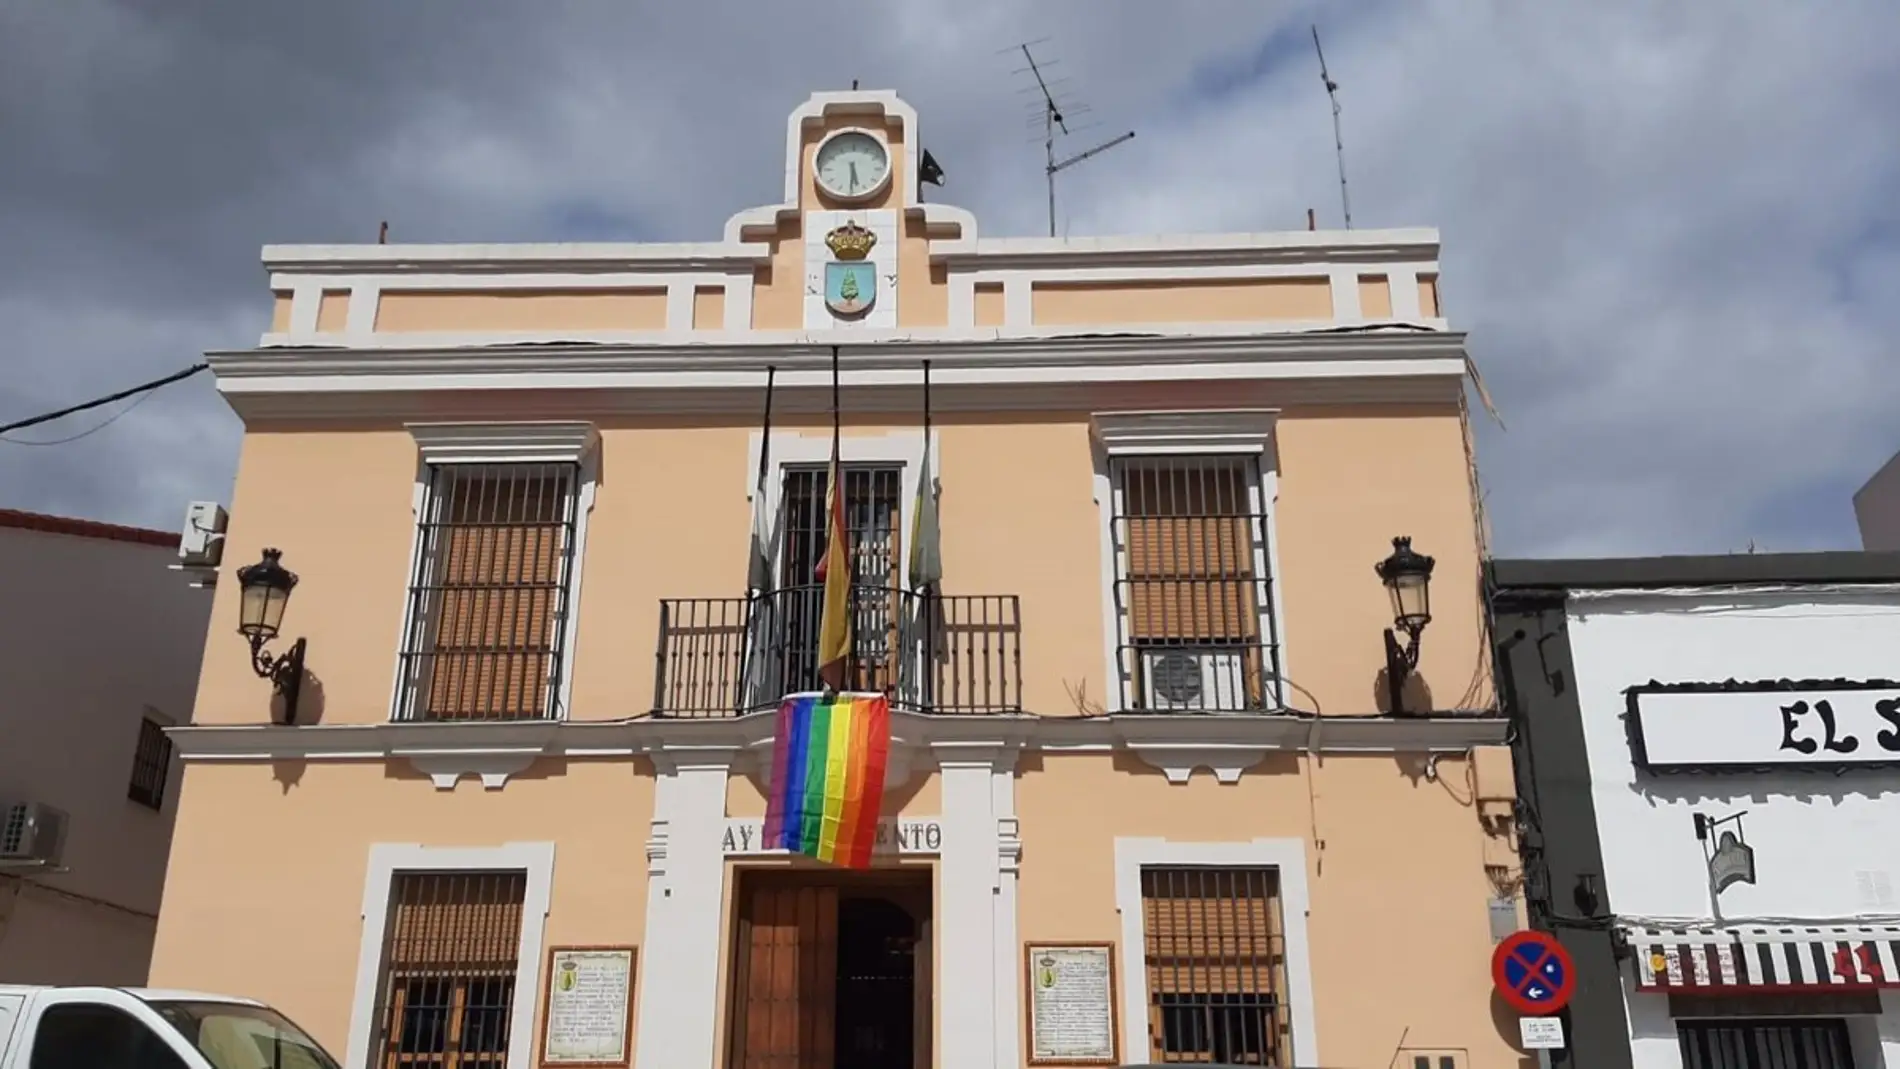 Ayuntamiento de El Ronquillo